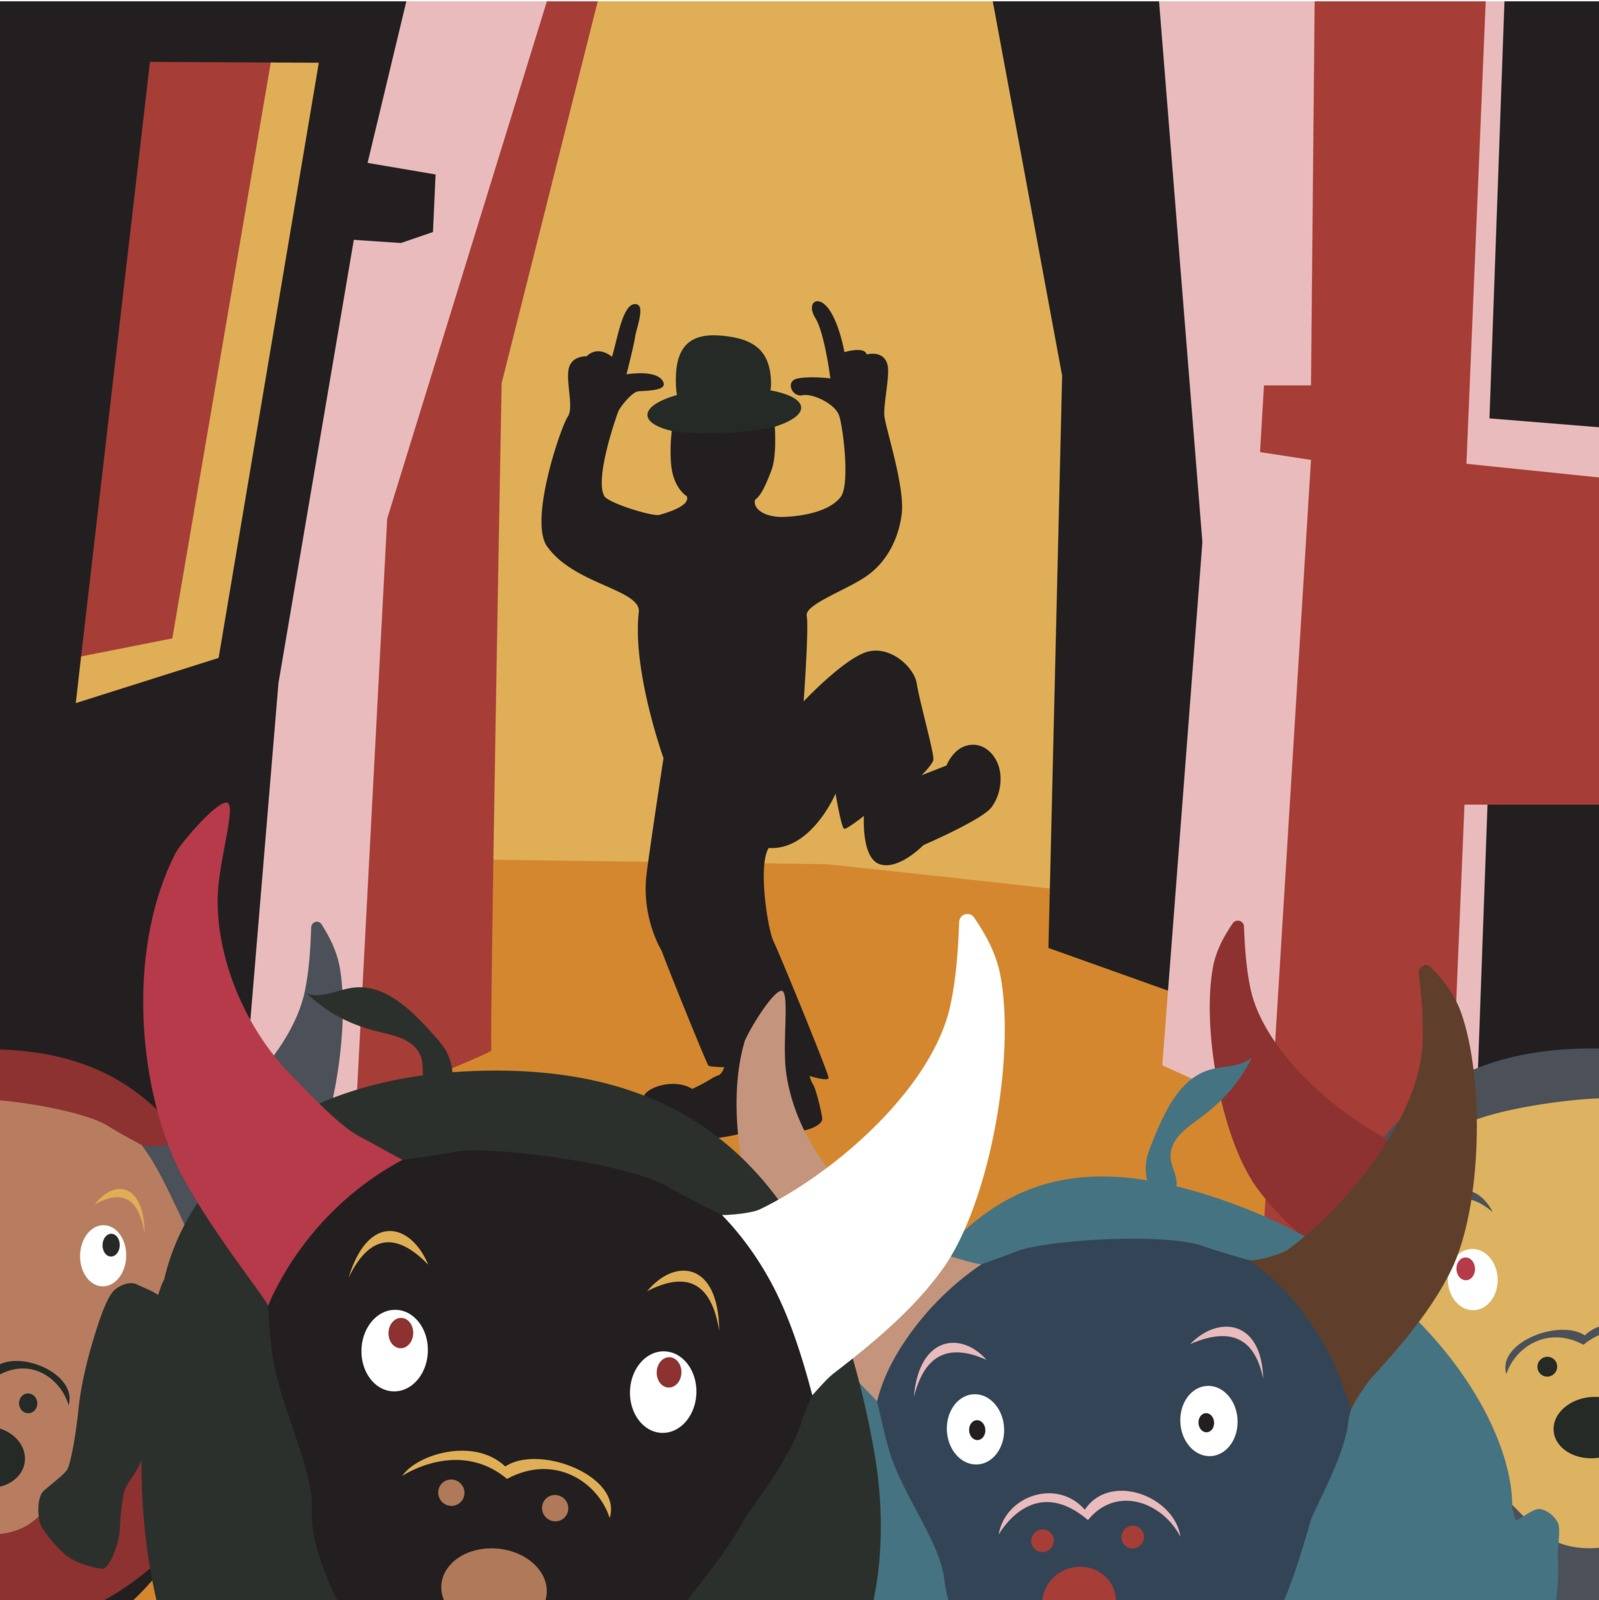 Editable vector cartoon illustration of bulls running away from a man in a street festival